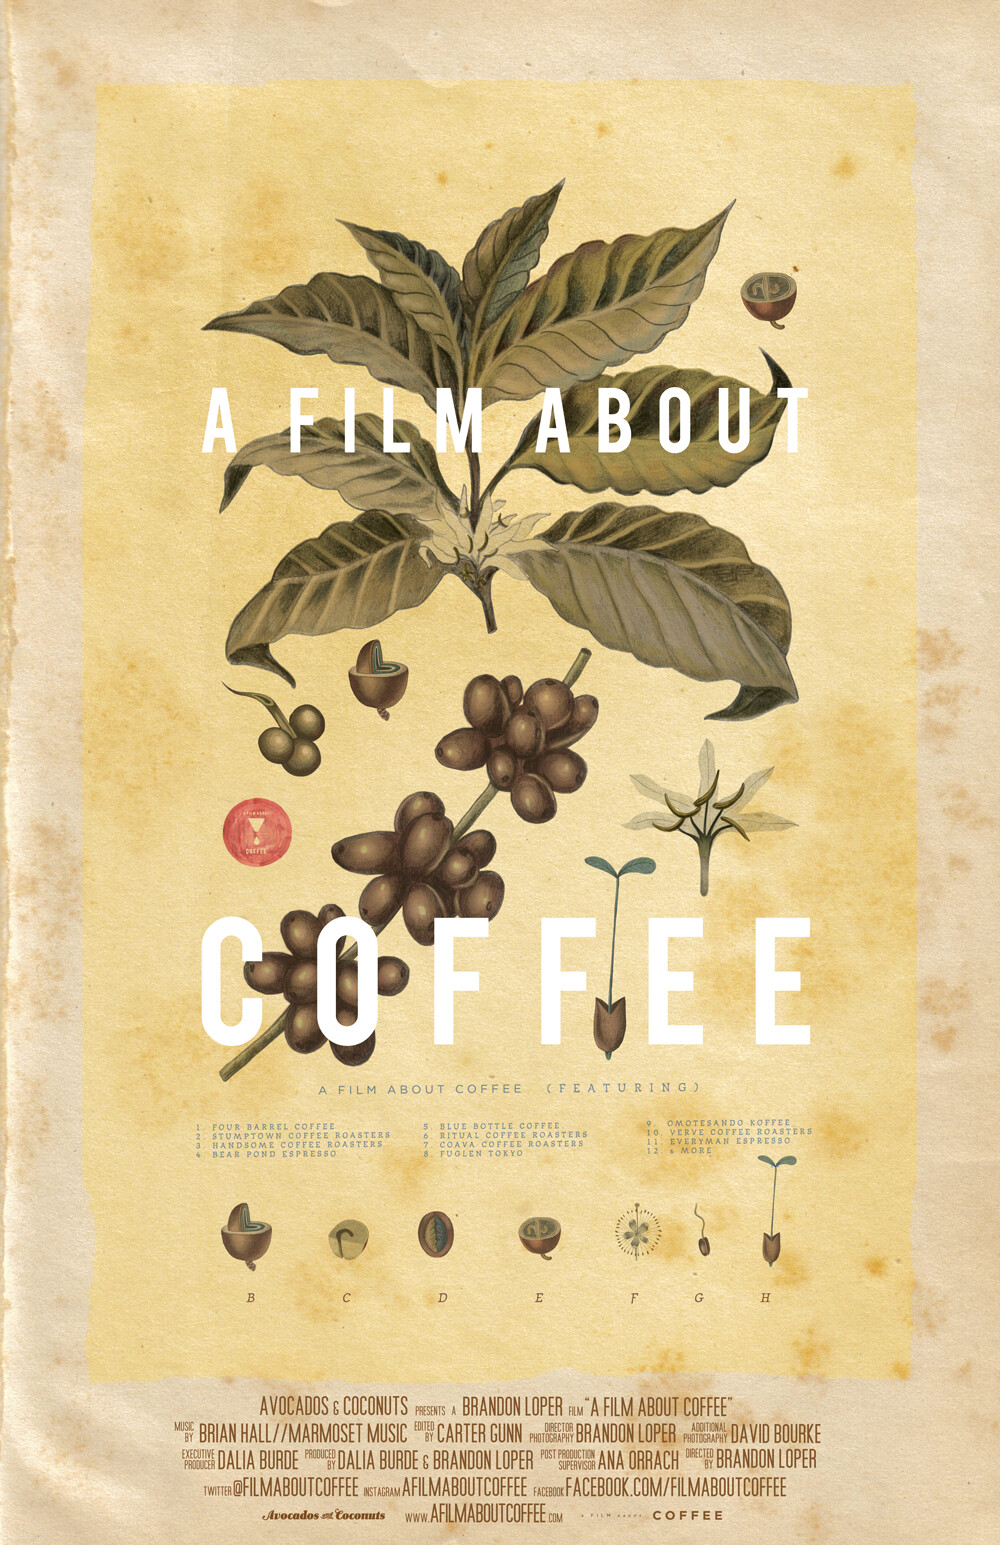 《一部关于咖啡的电影 A Film about Coffee》自从上班染上喝咖啡的矫情习惯以后，也自觉的看一些相关片子来丰富一下自己的相关知识，偶尔紧急情况下还可以装一下，O(∩_∩)O哈哈哈~